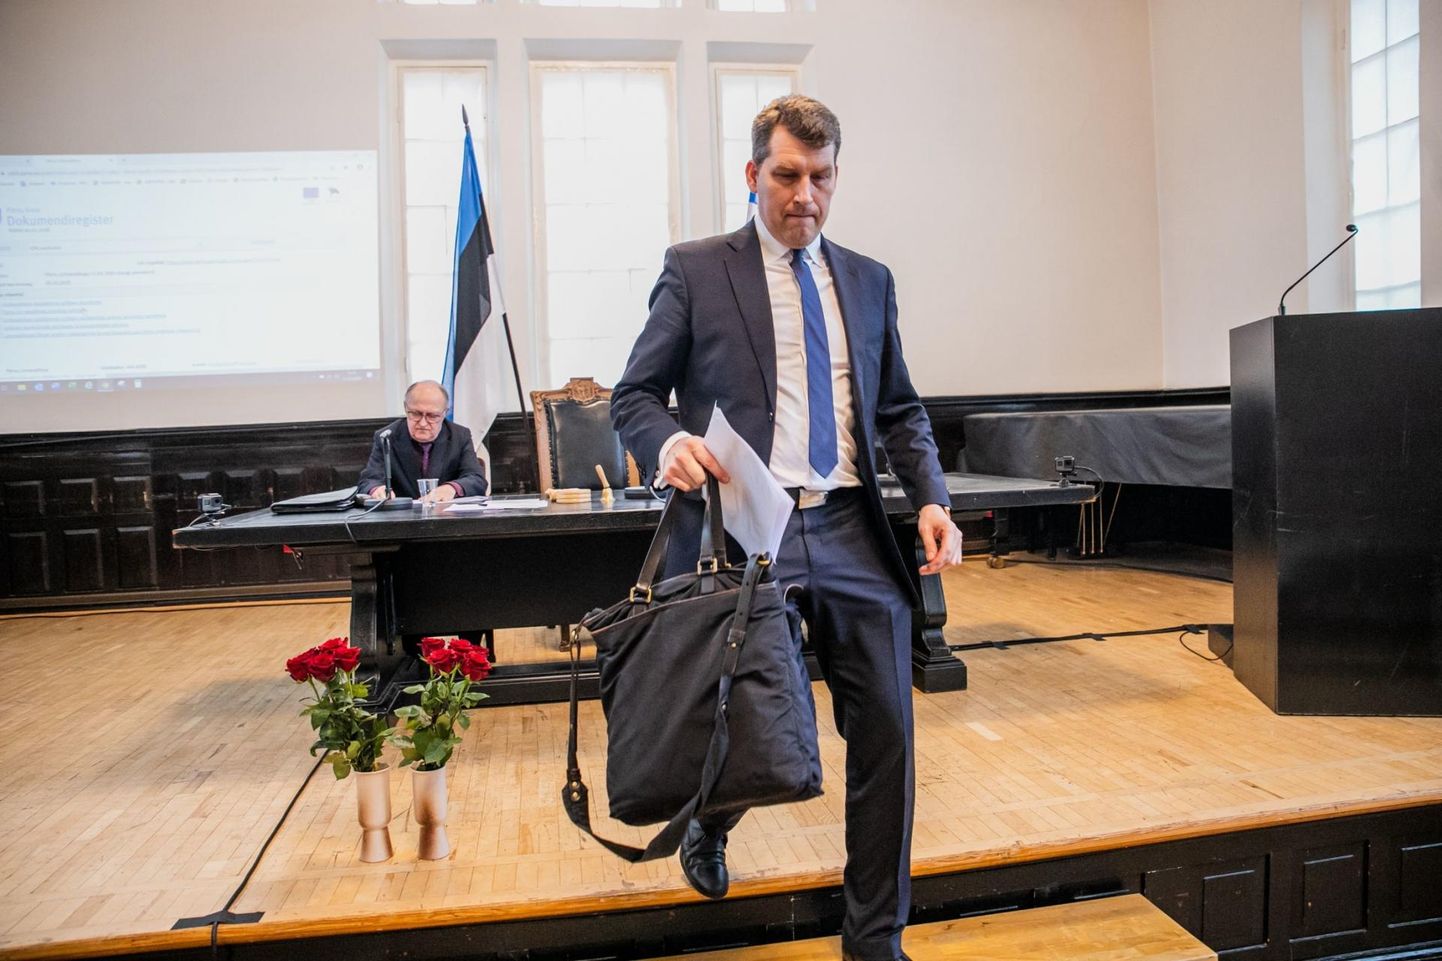 Praeguseks endine Pärnu linnavolikogu esimees Andres Metsoja sõnul pidas ta täna mõneks ajaks viimase kõne. 